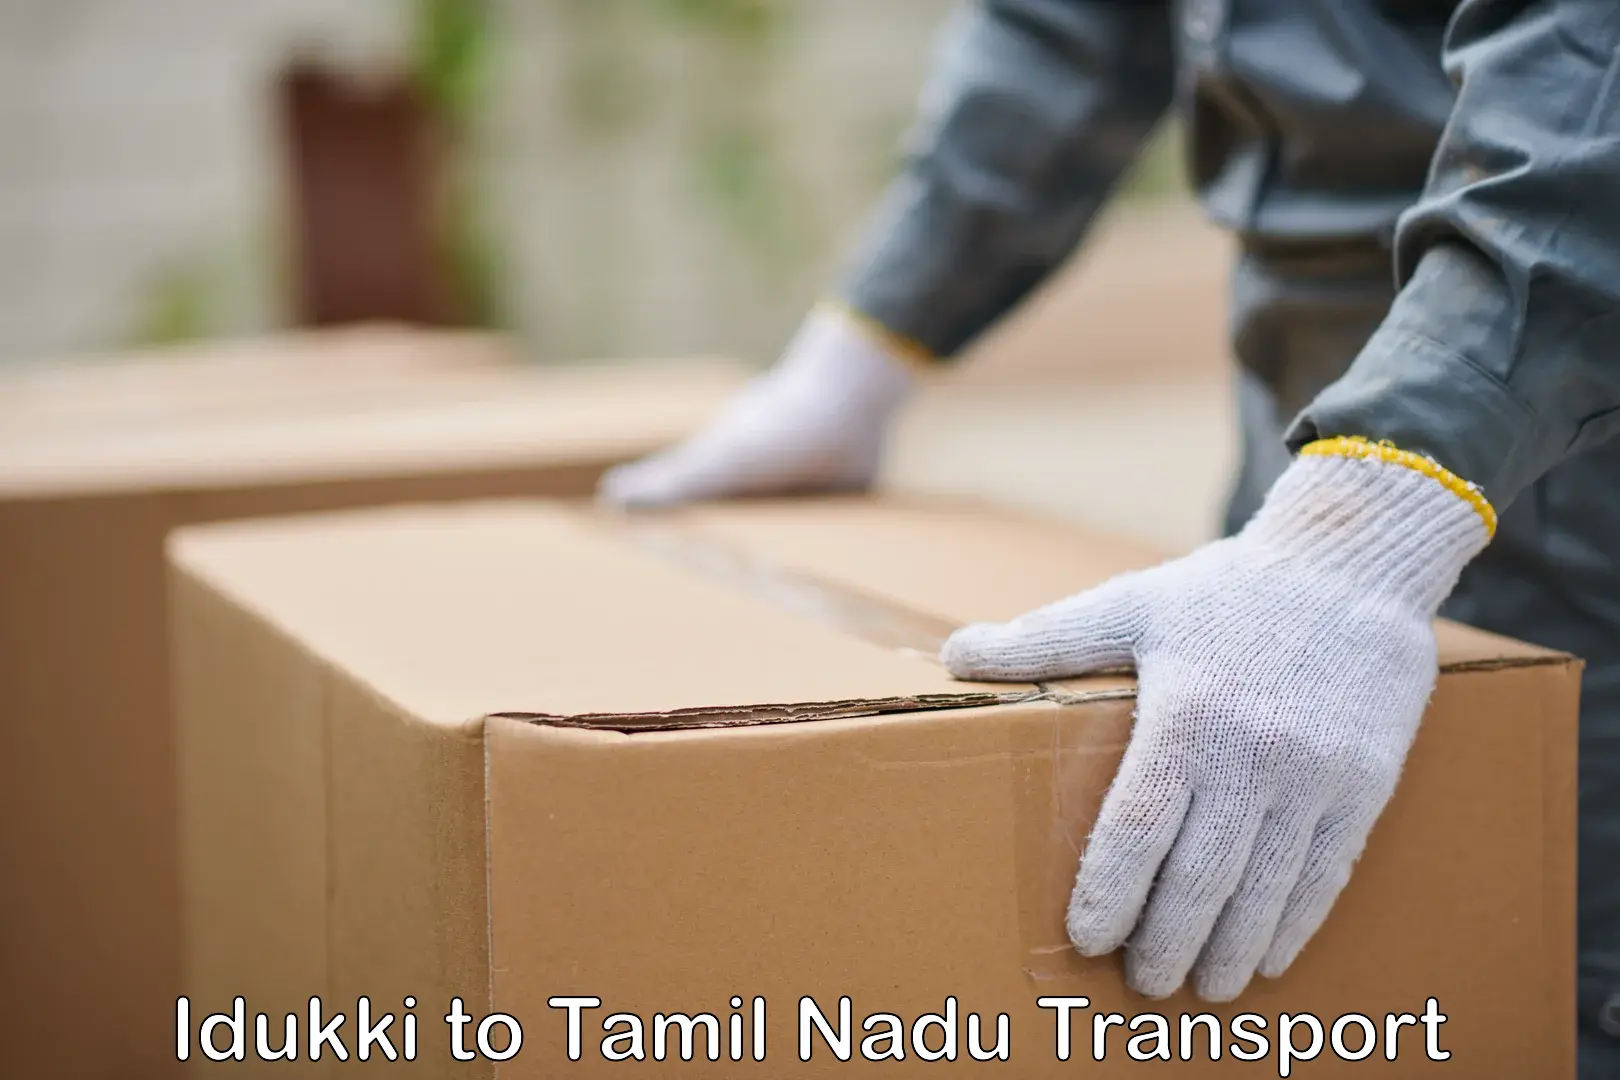 Shipping services in Idukki to Tamil Nadu